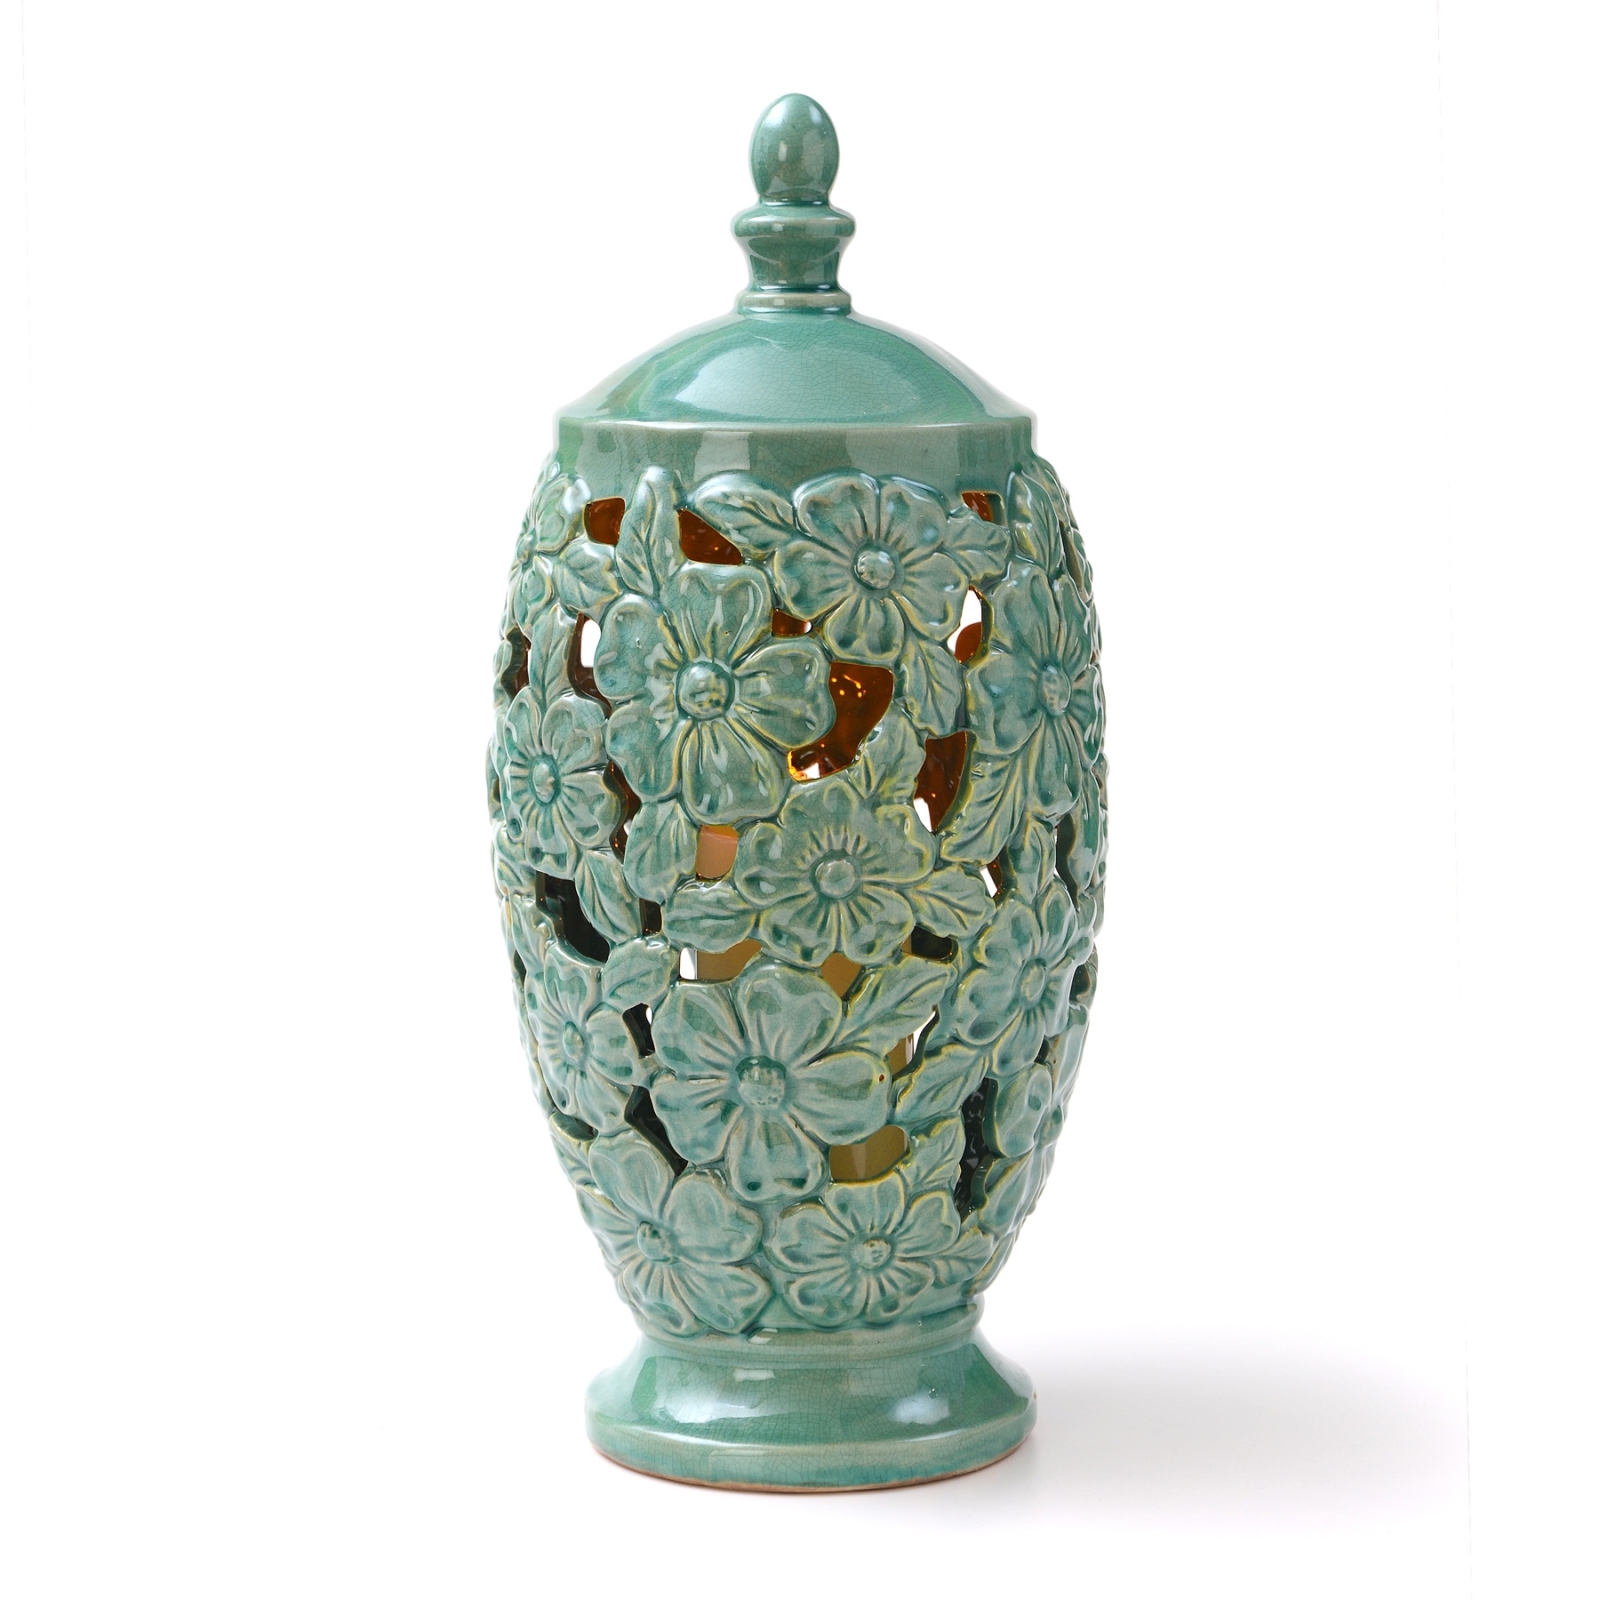 CandleTEK 17" Ceramic Floral Vase w/ Flameless Candle Green